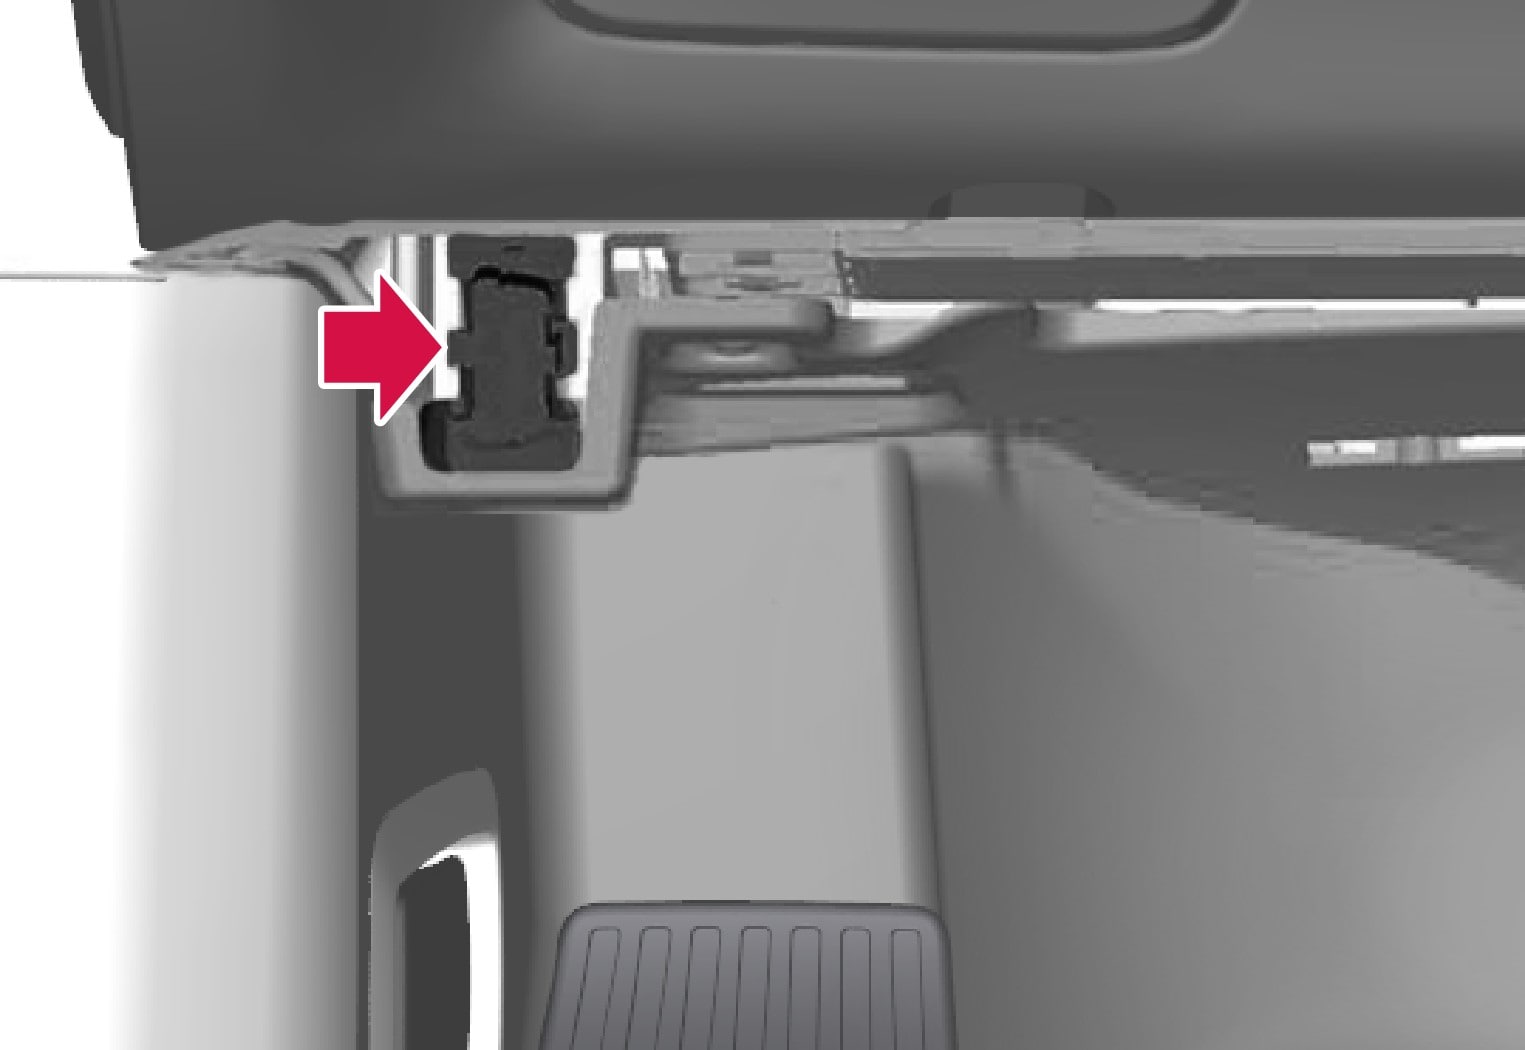 Діагностична розетка розташована під панеллю приладів, на тому ж боці, що й кермо автомобіля.